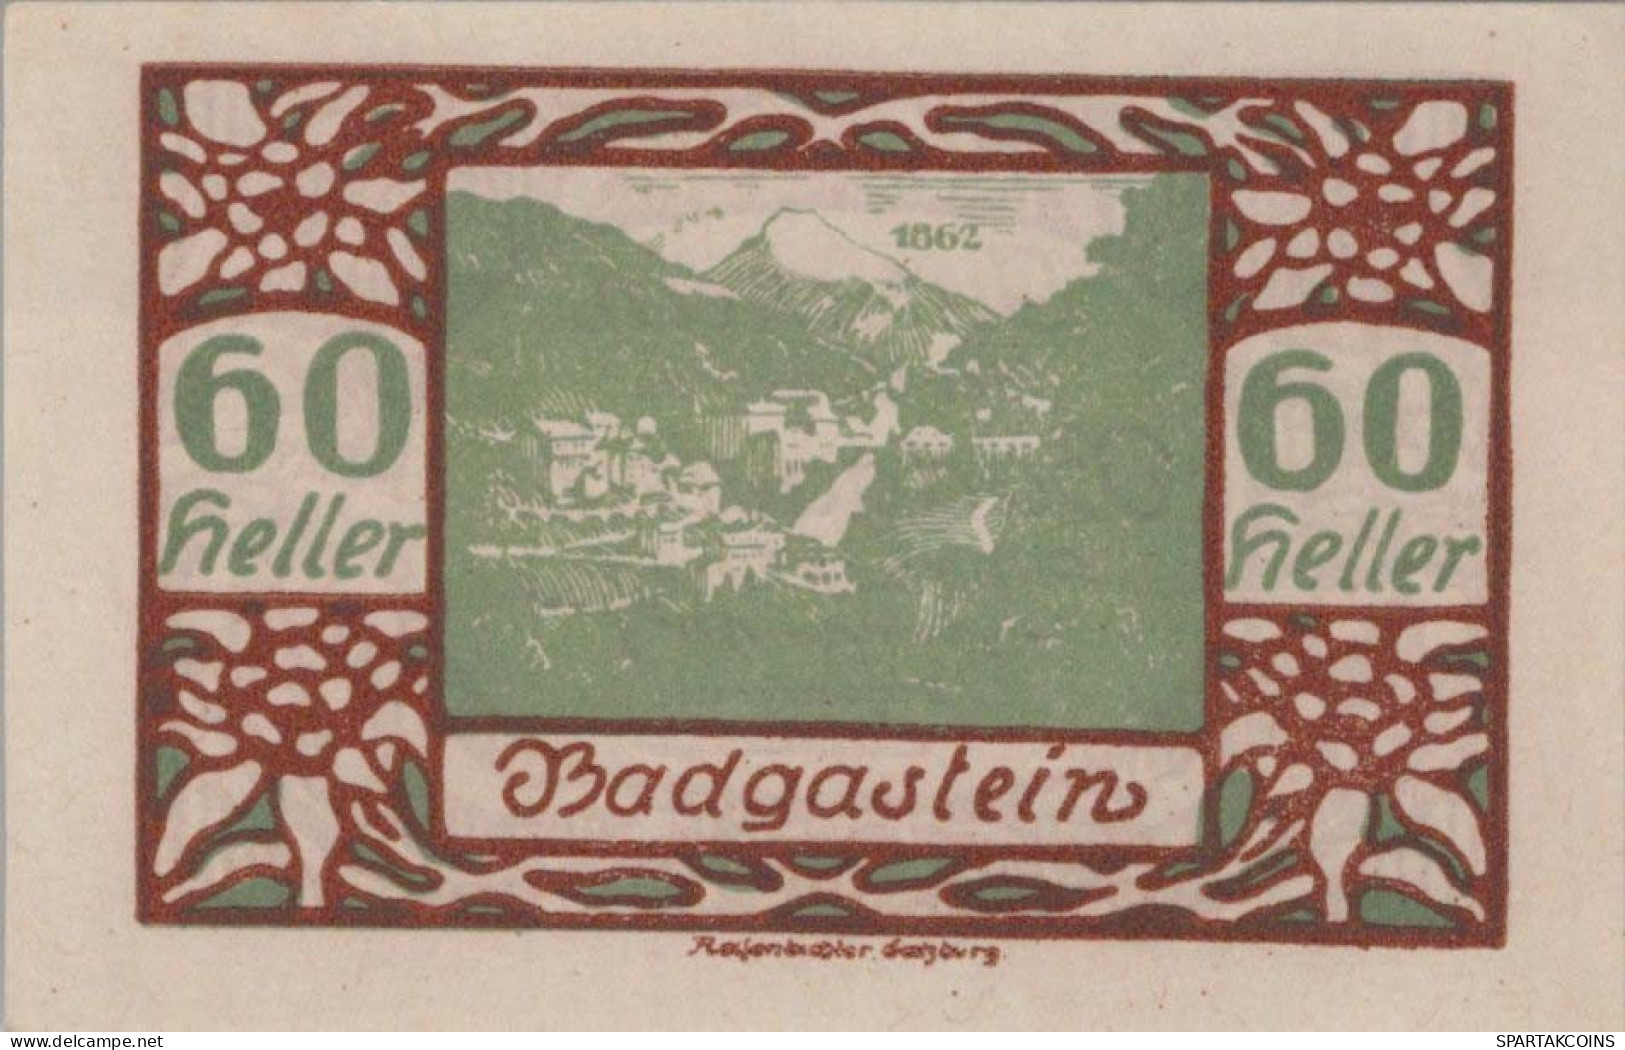 60 HELLER 1920 Stadt BAD GASTEIN Salzburg Österreich Notgeld Papiergeld Banknote #PG525 - Lokale Ausgaben